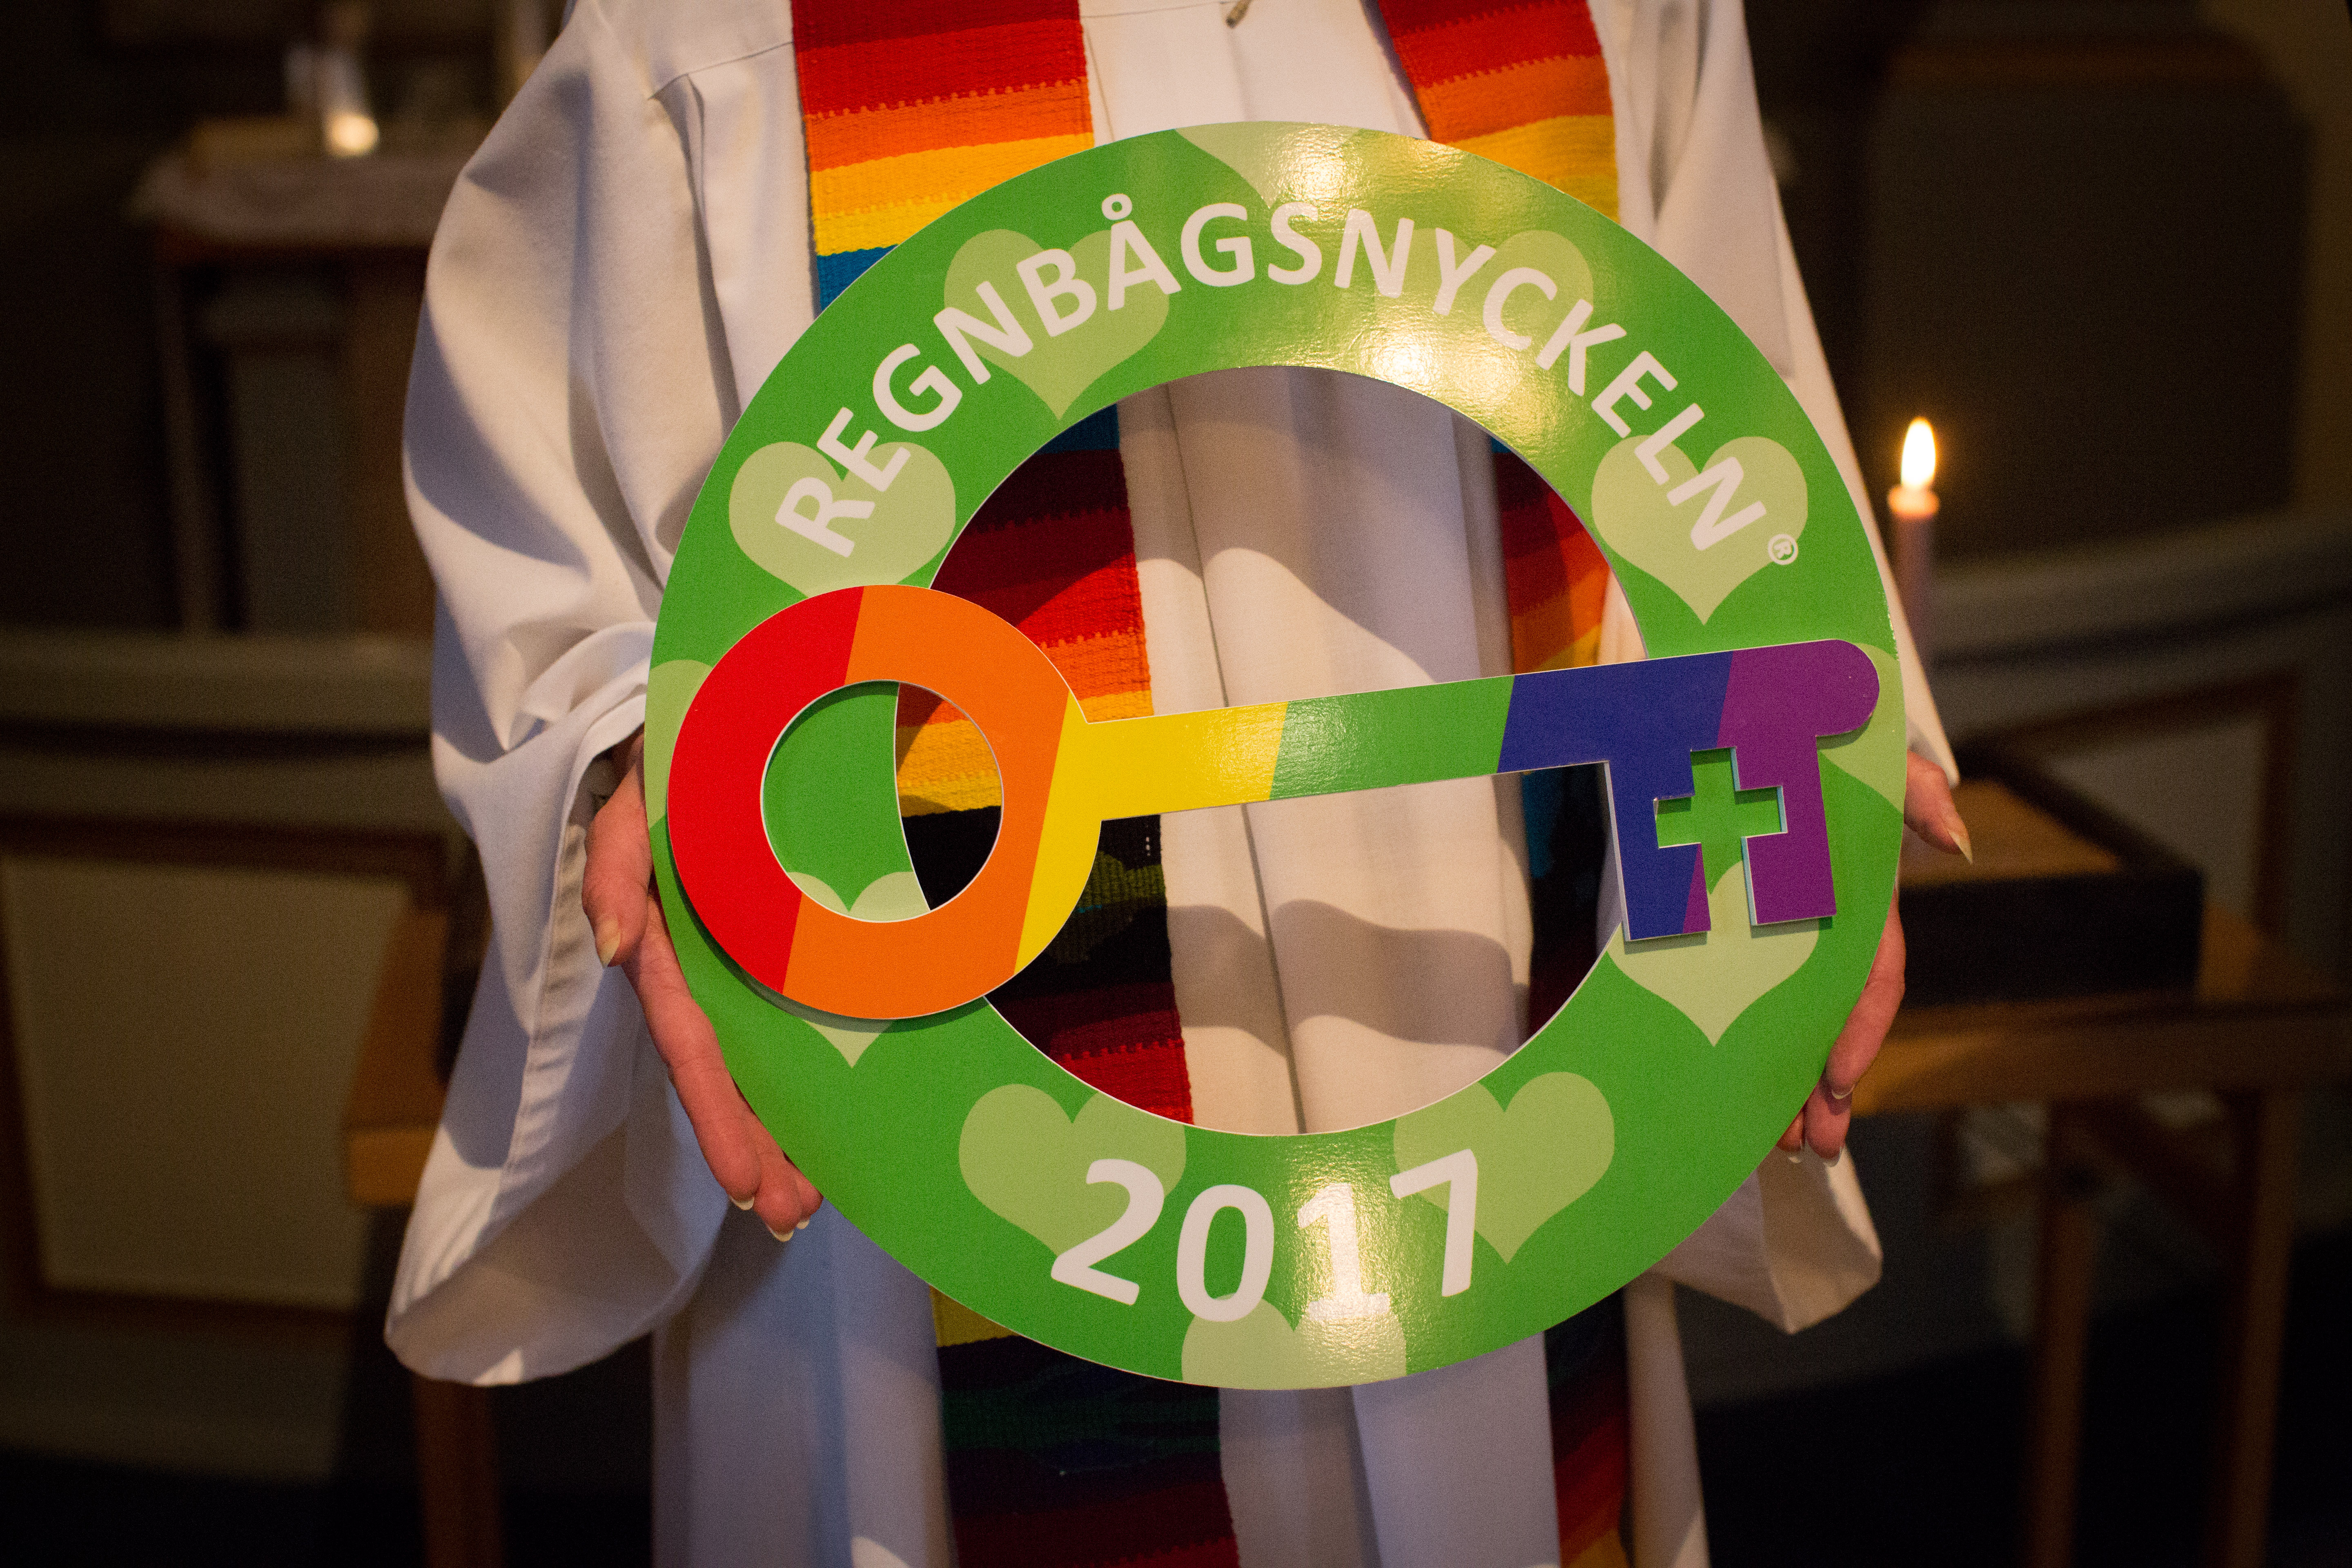 Präst håller upp den stora, färgglada regnbågsnyckeln från år 2017. Prästens stola är regnbågsfärgad. Prästen